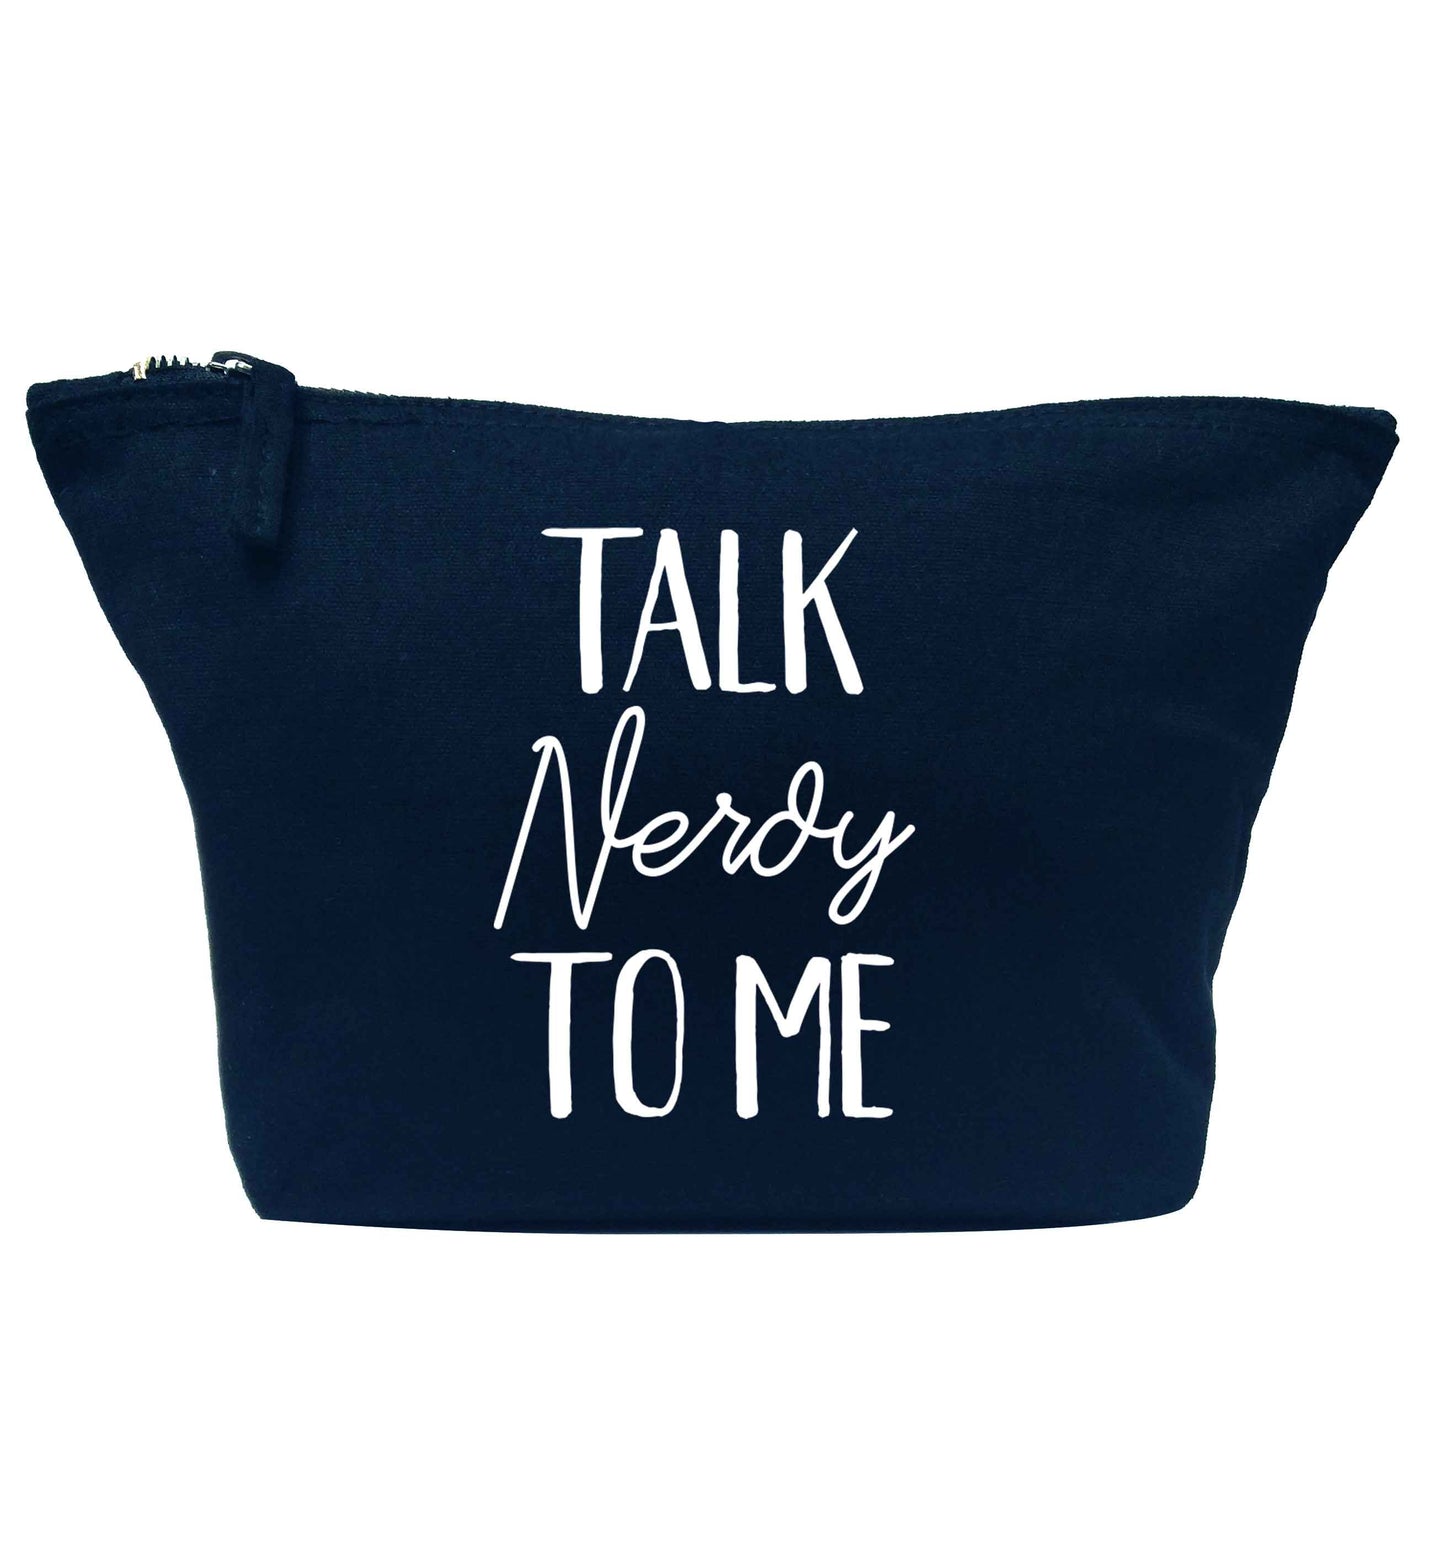 Talk nerdy to me navy makeup bag